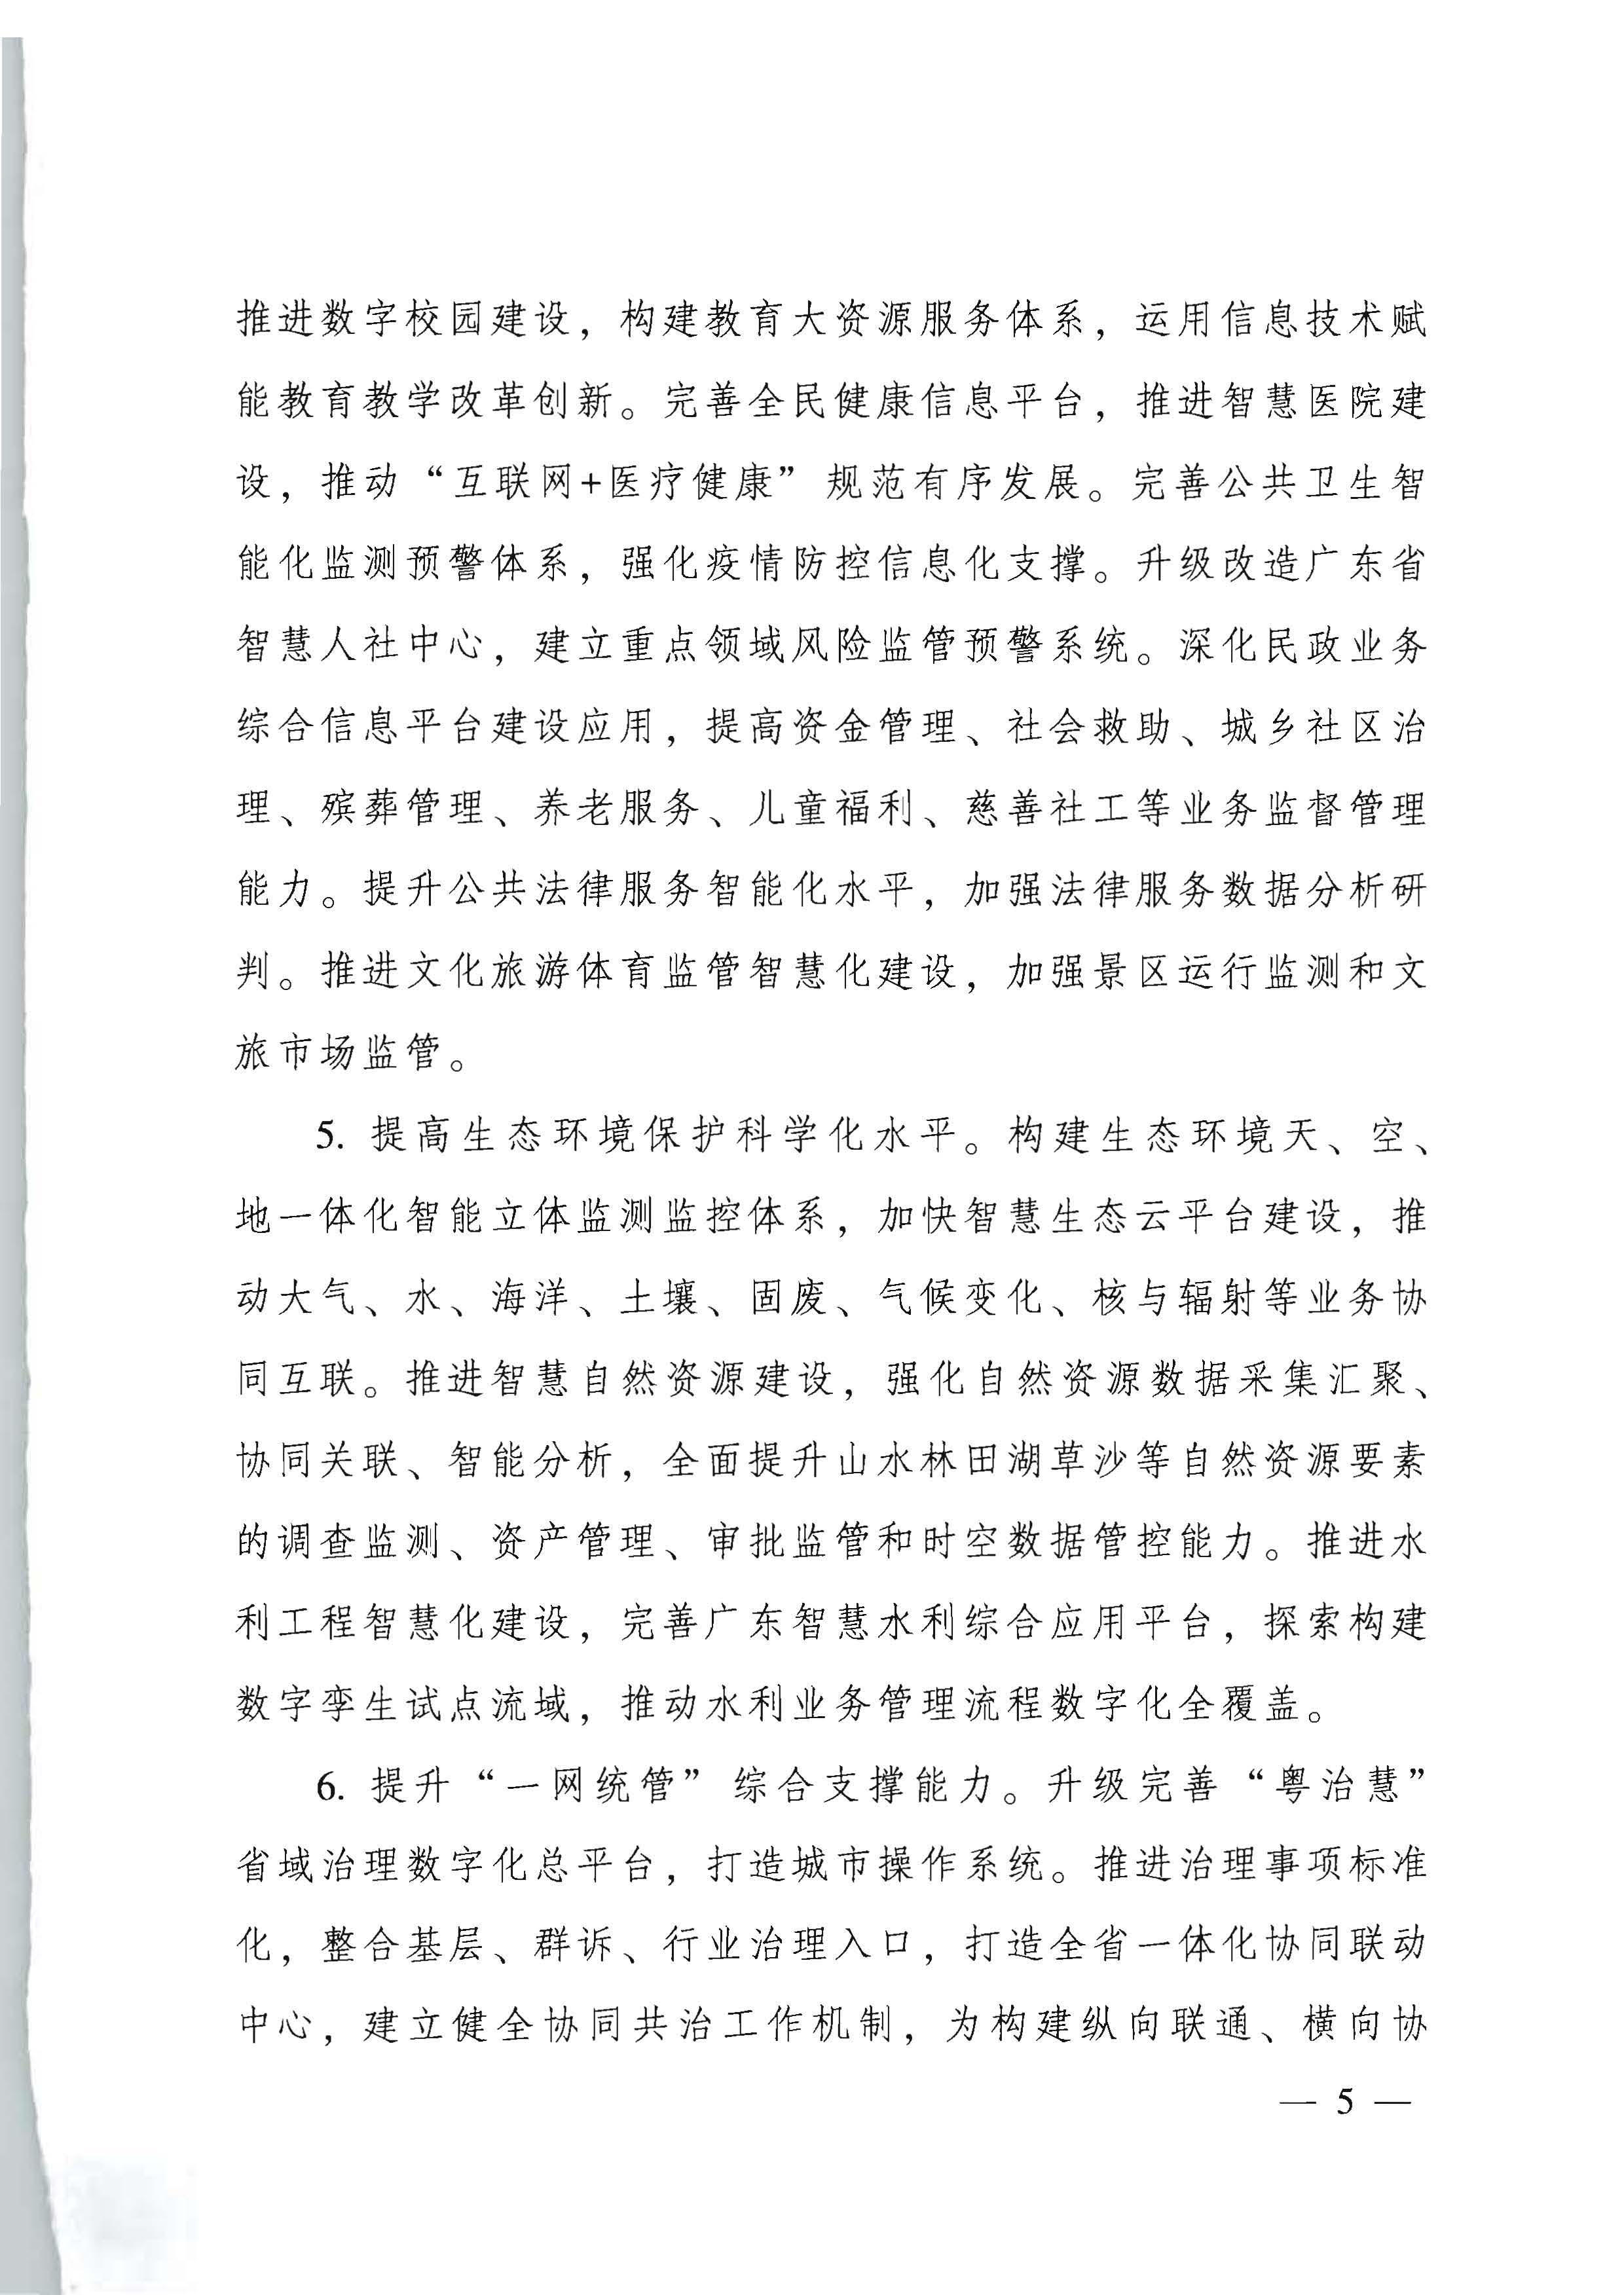 广东省人民政府关于进一步深化数字政府改革建设的实施意见_页面_05.jpg